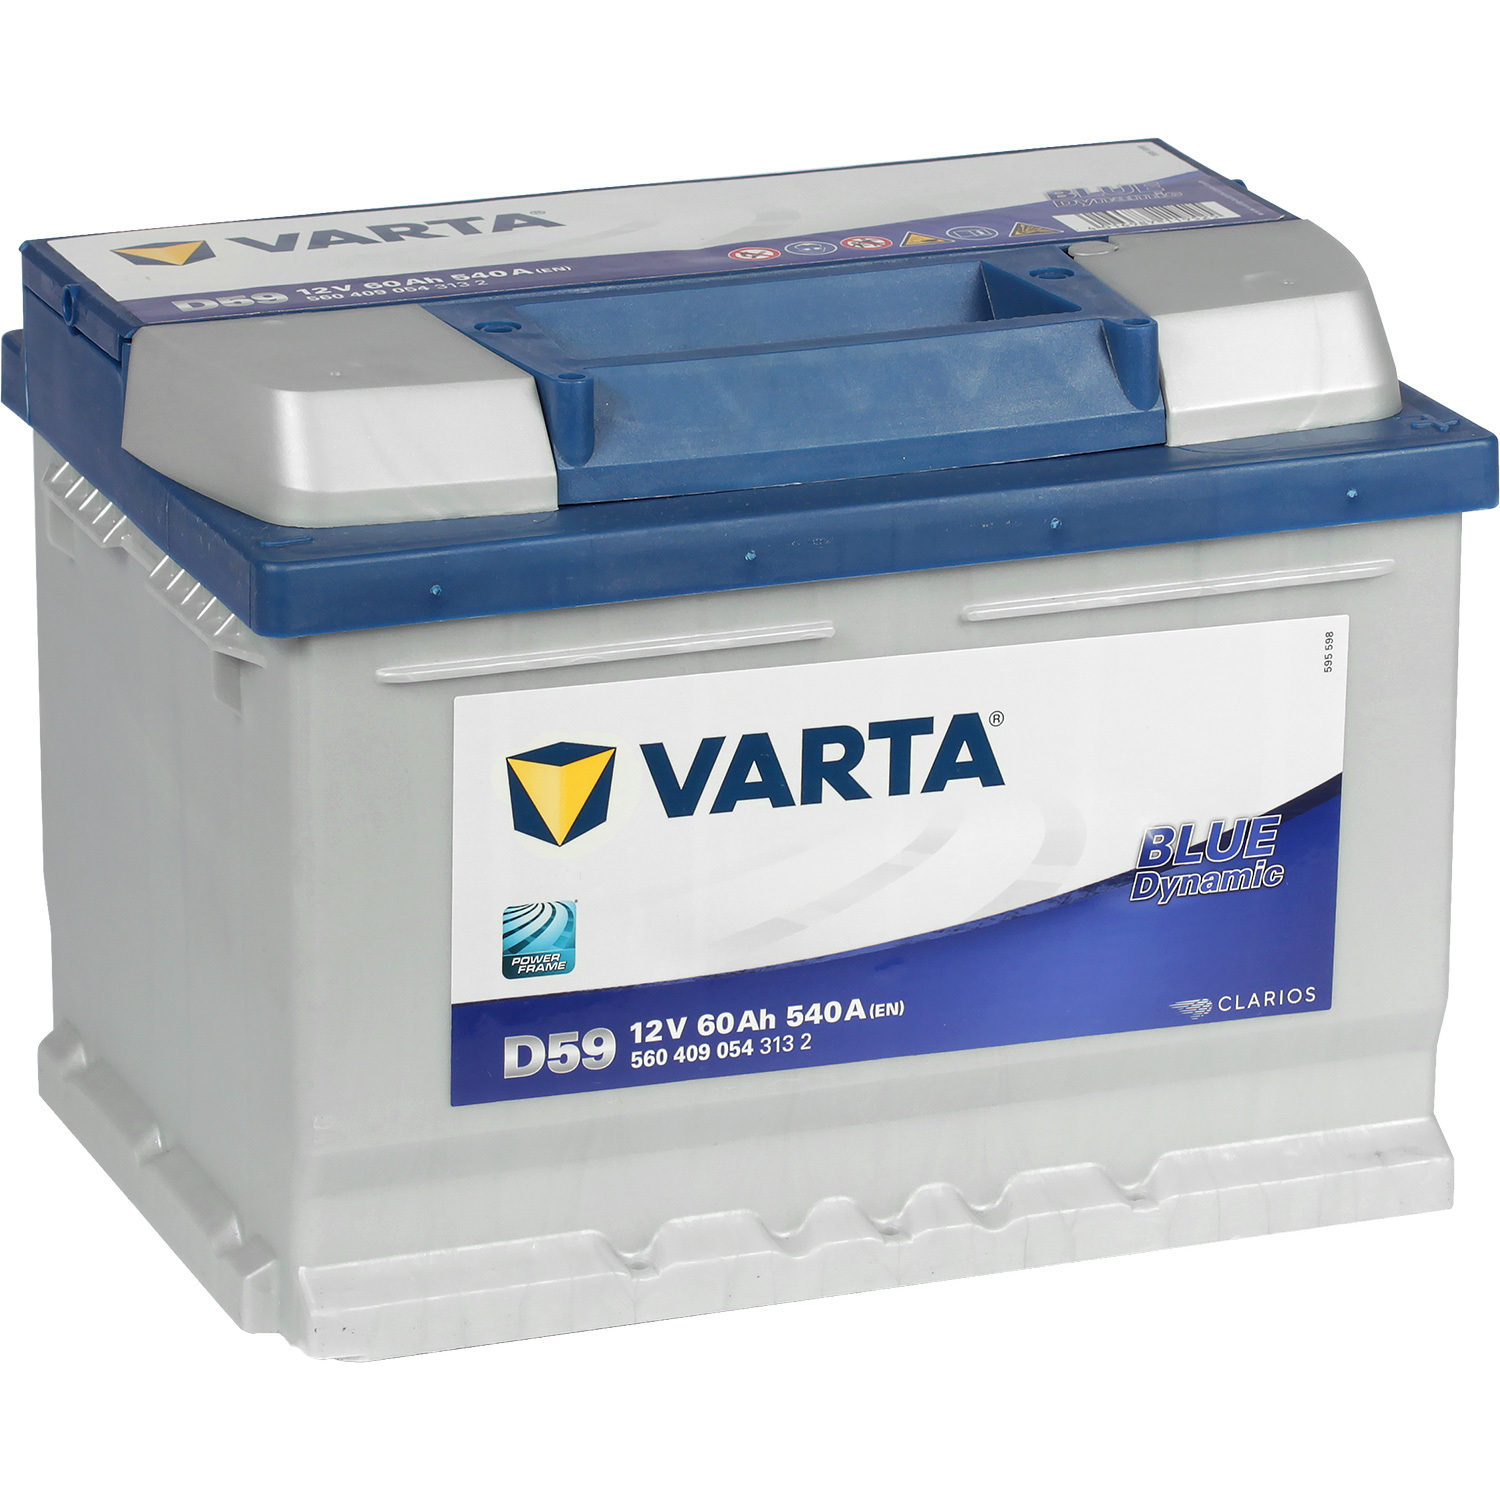 Varta Автомобильный аккумулятор Varta Blue Dynamic D59 60 Ач обратная полярность LB2 varta автомобильный аккумулятор varta blue dynamic d59 60 ач обратная полярность lb2